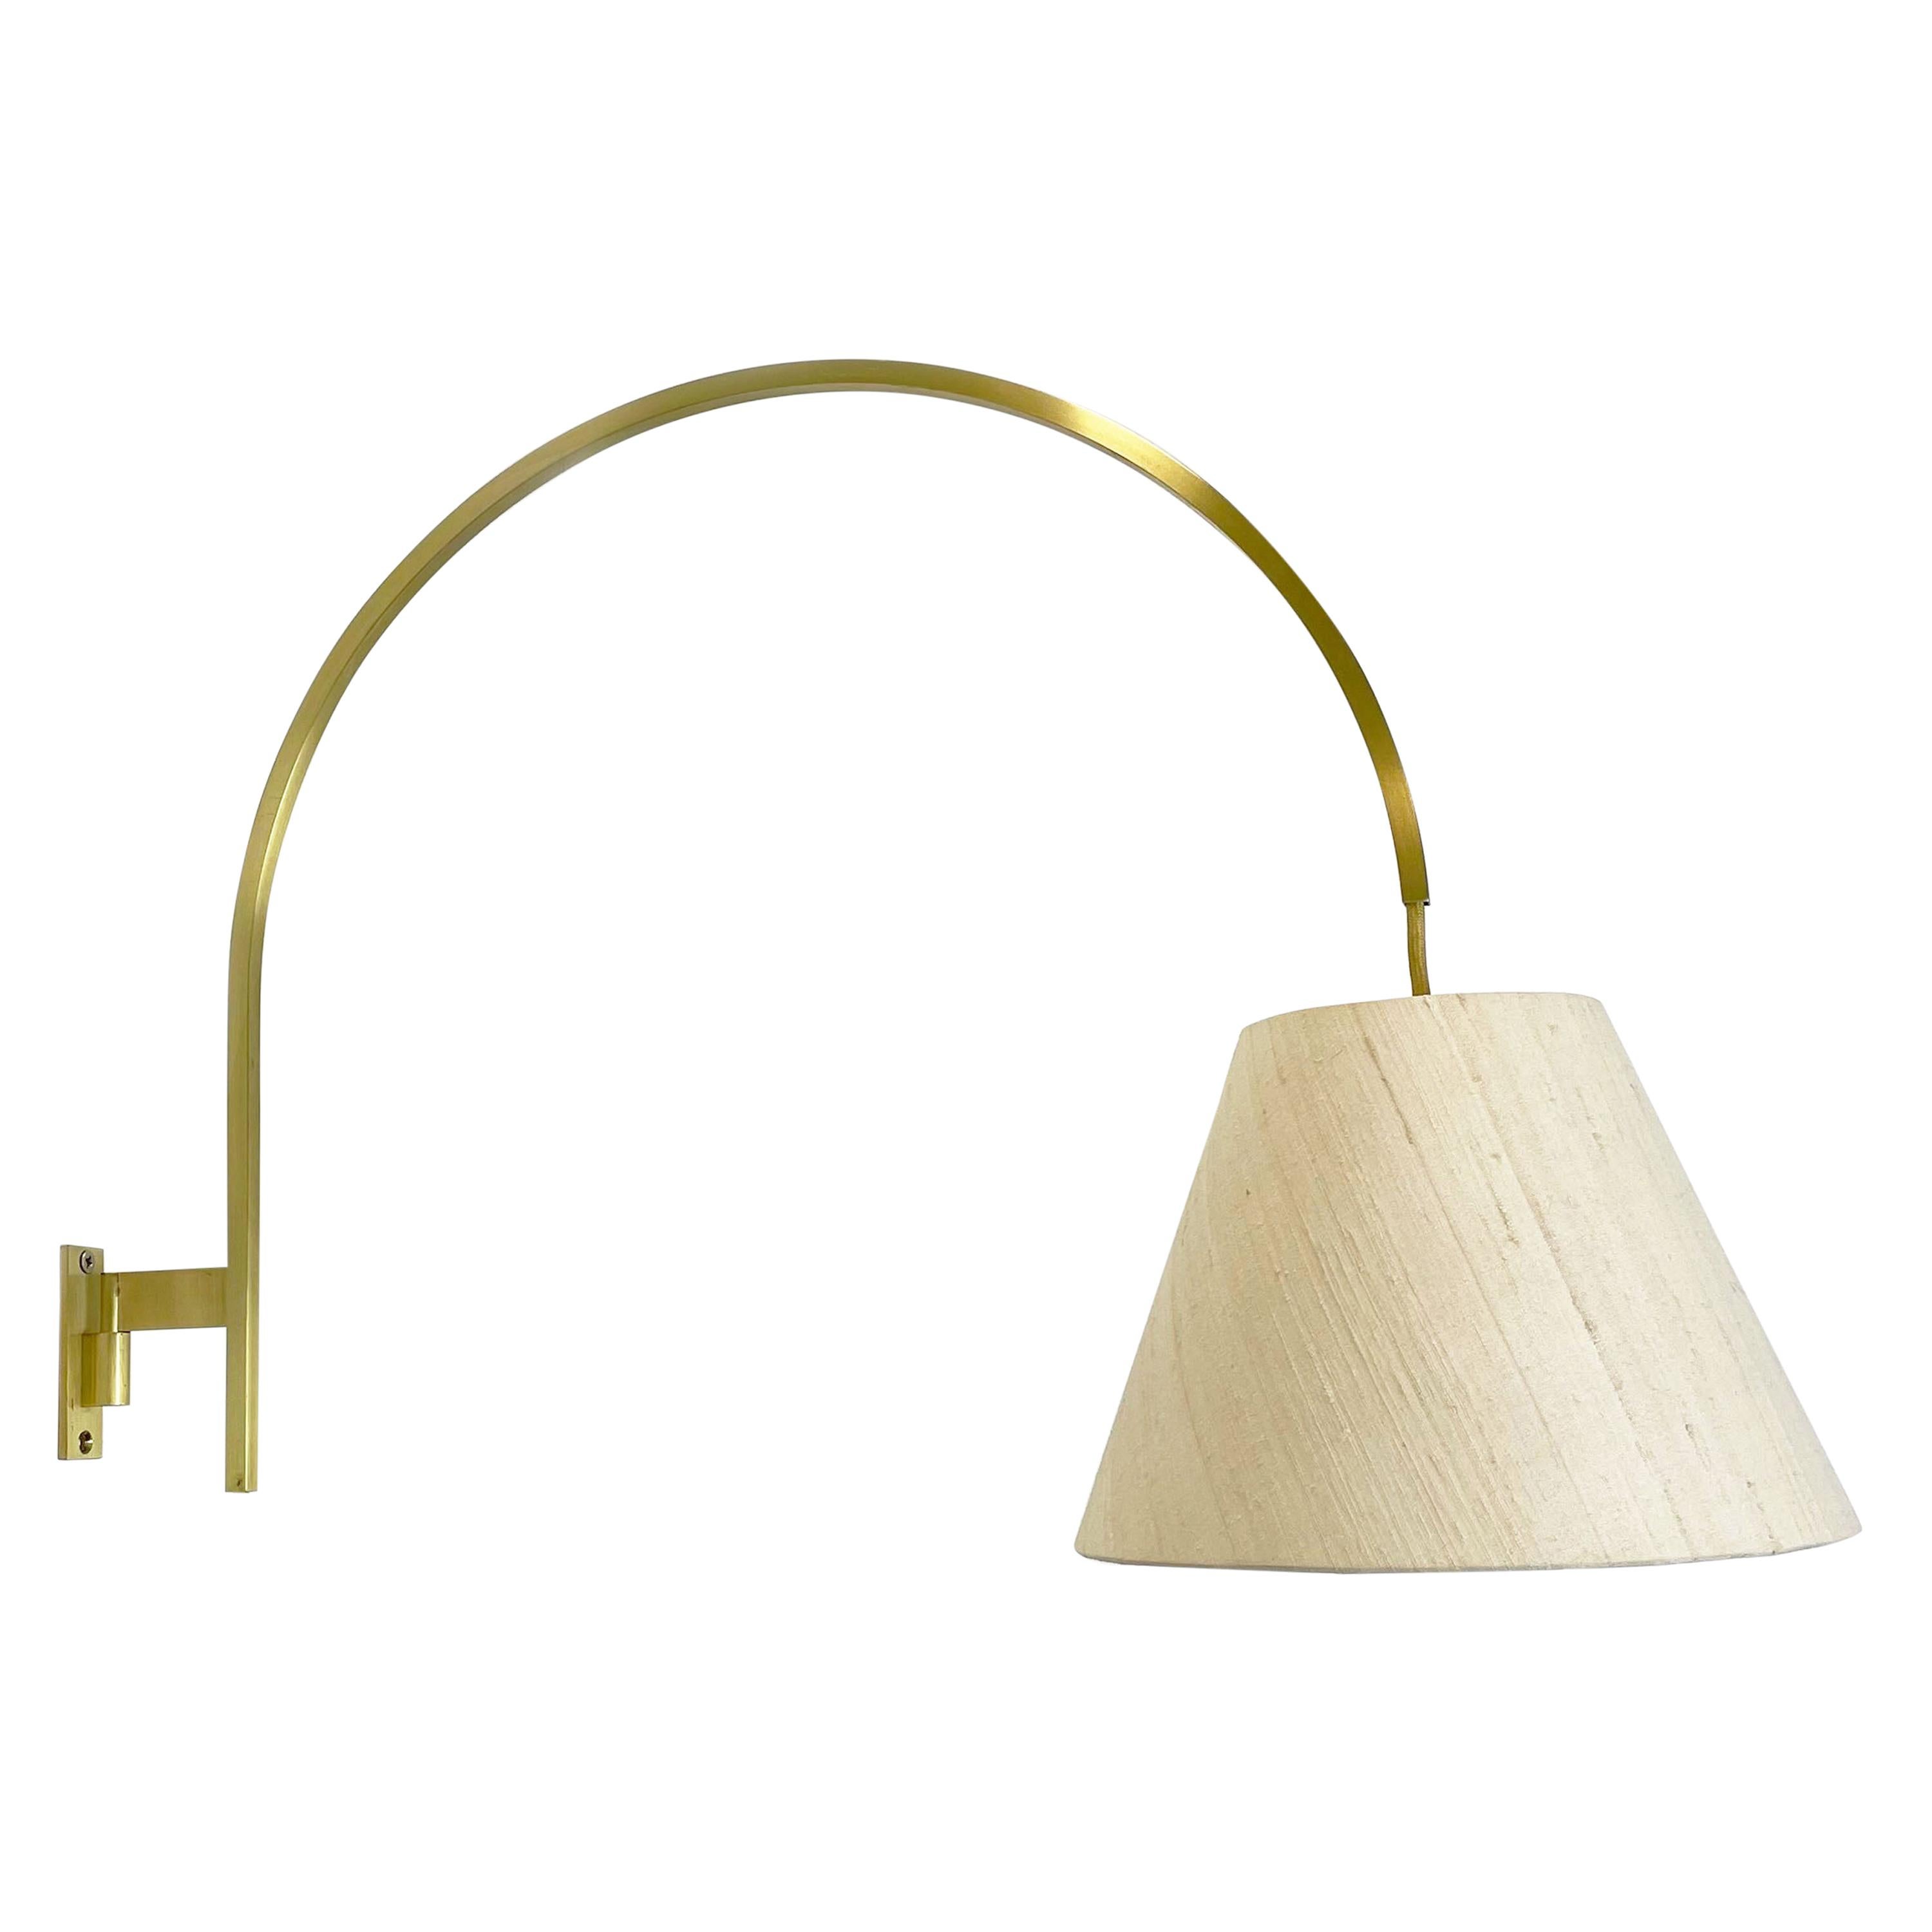 Minimalist Stilnovo Style Adjustable Counter Weight Brass Wall Light Italy 1960s